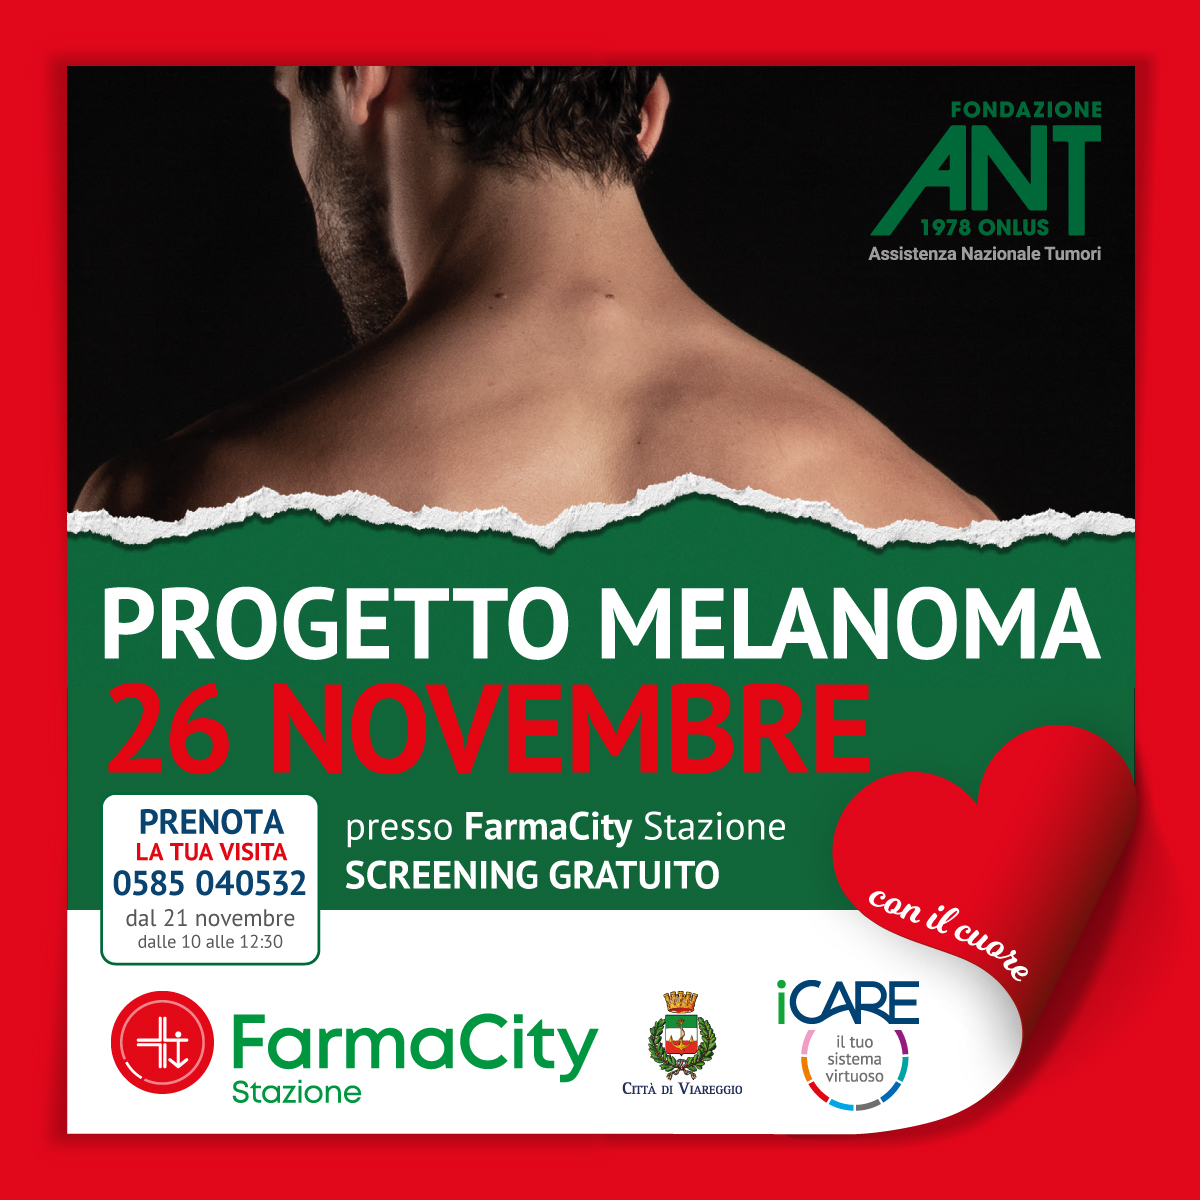 FarmaCity e Fondazione ANT insieme per la prevenzione contro il melanoma